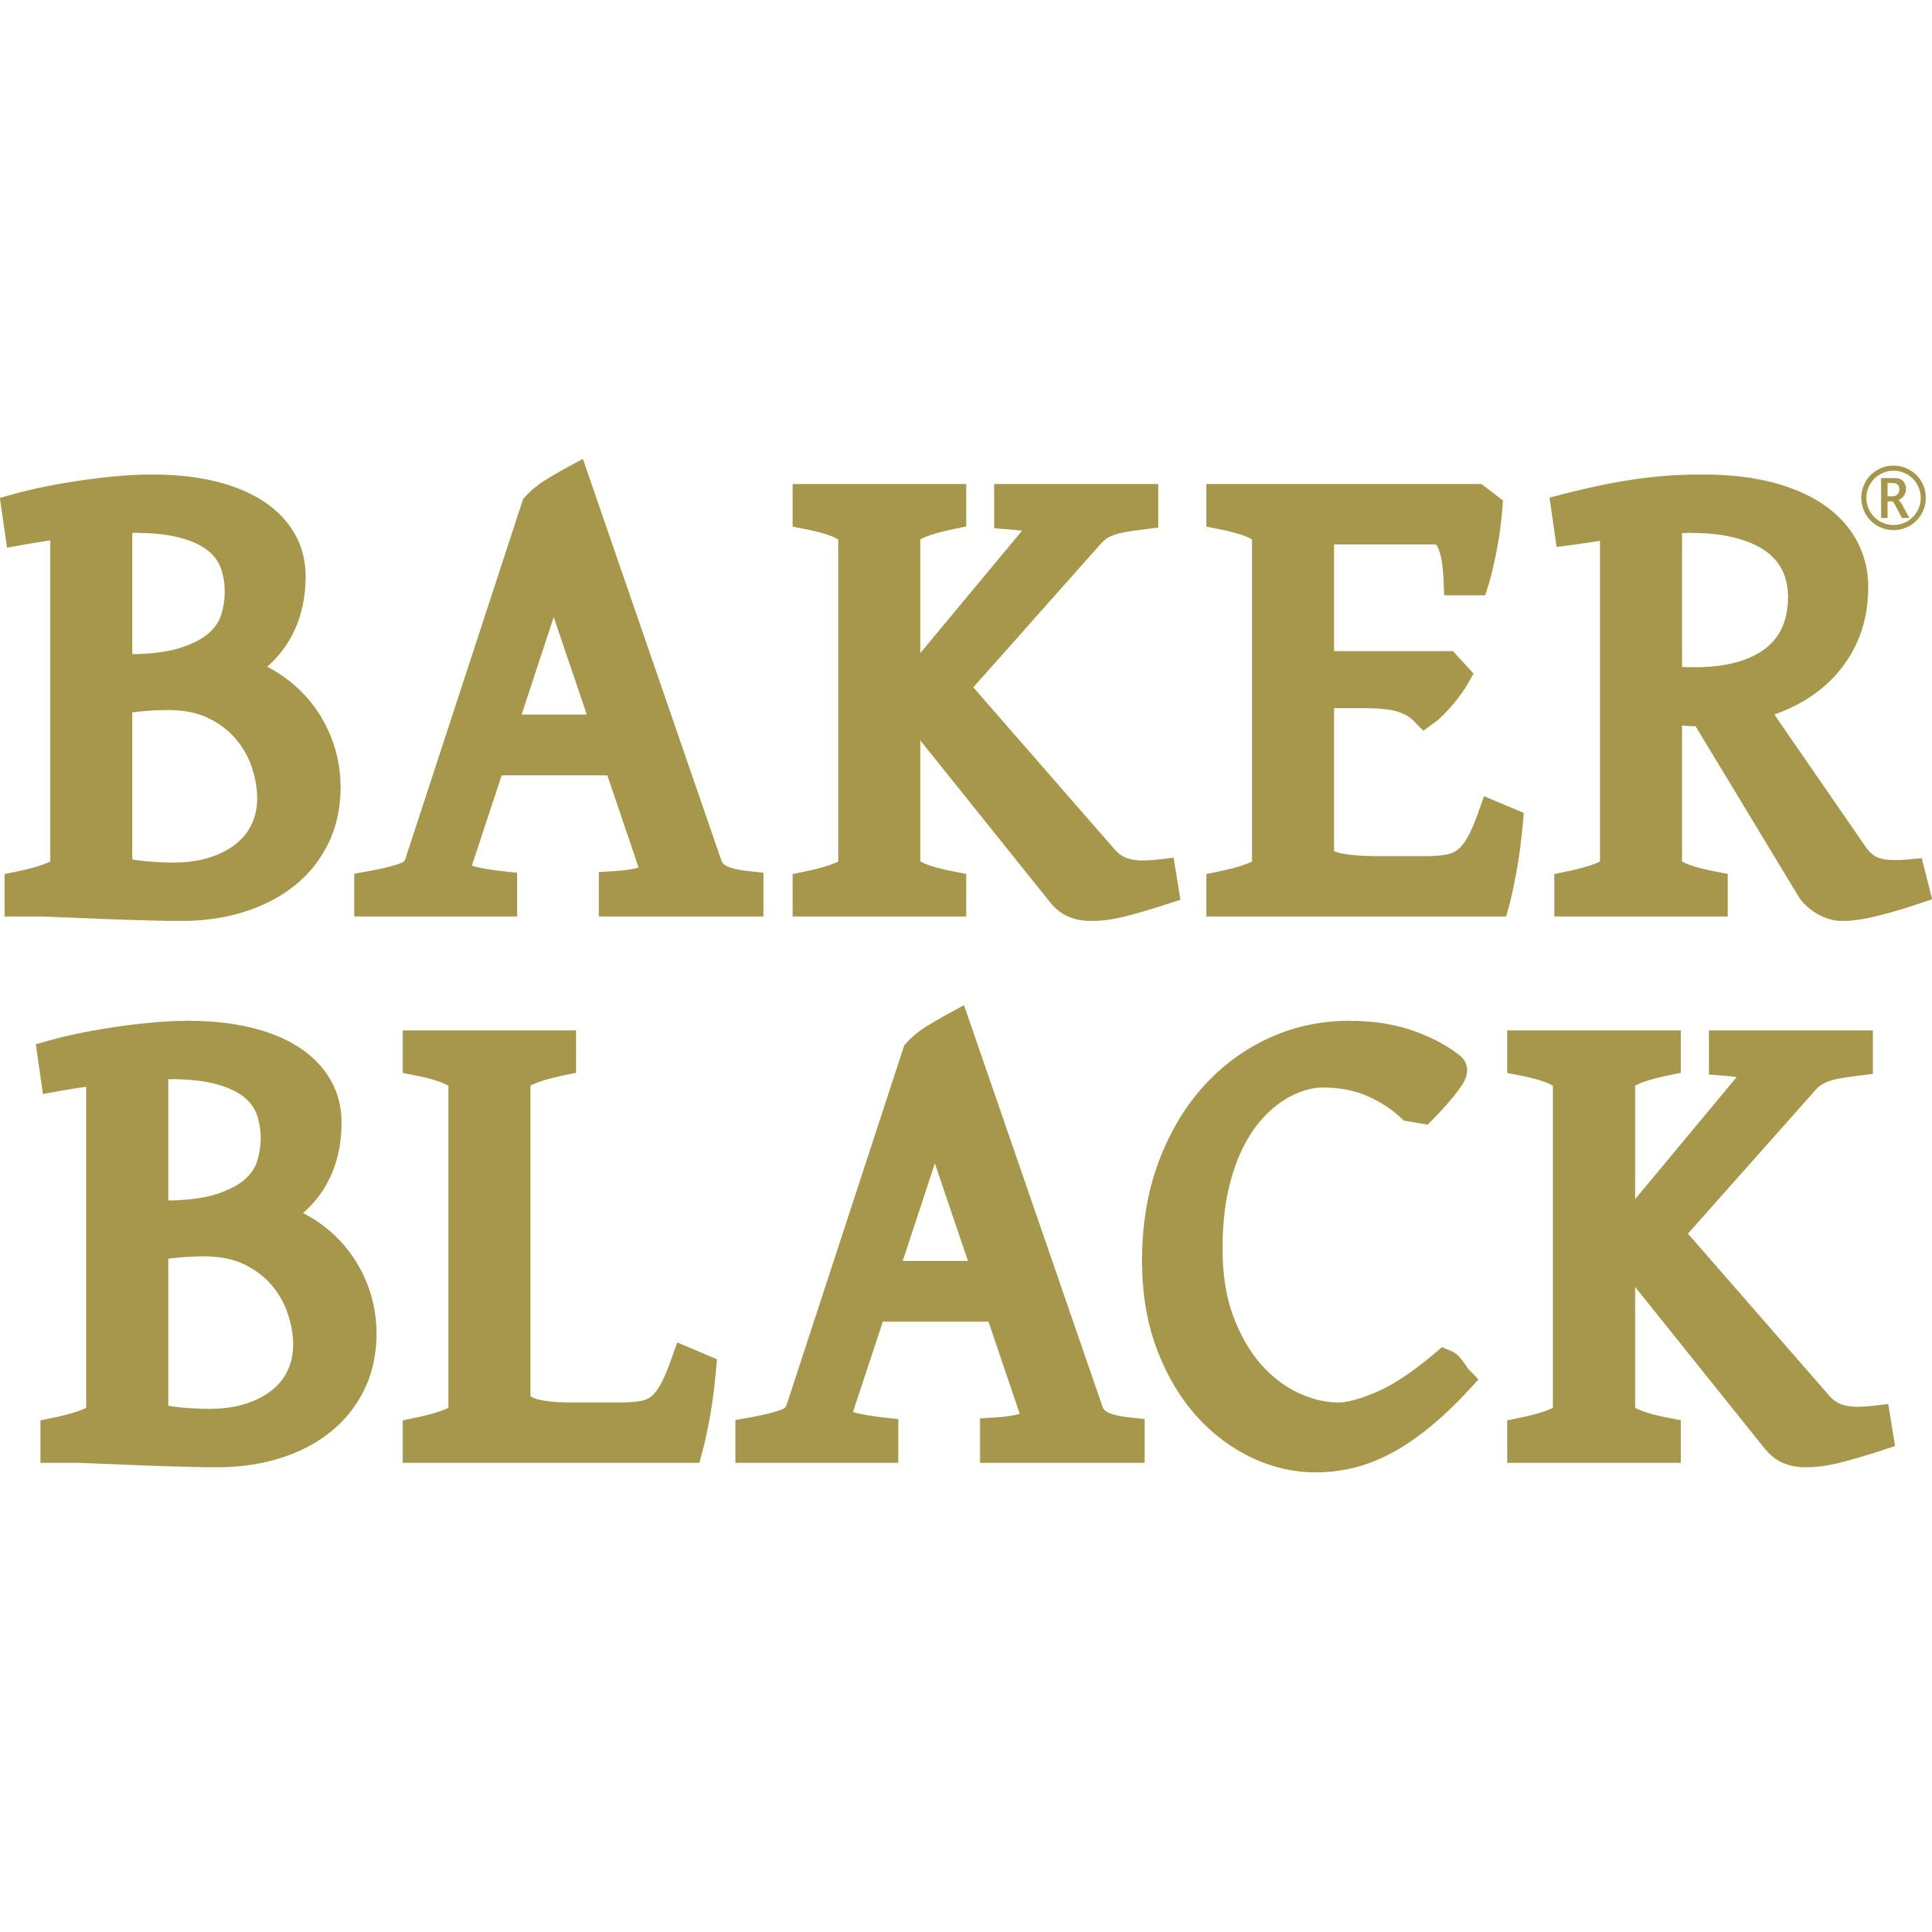 Baker Black el nuevo Whisky de Grupo Viñafiel elaborado a base de whisky de malta en Highlands bajo la Denominación de Origen de Scotch Whisky #Sevilla #Cádiz